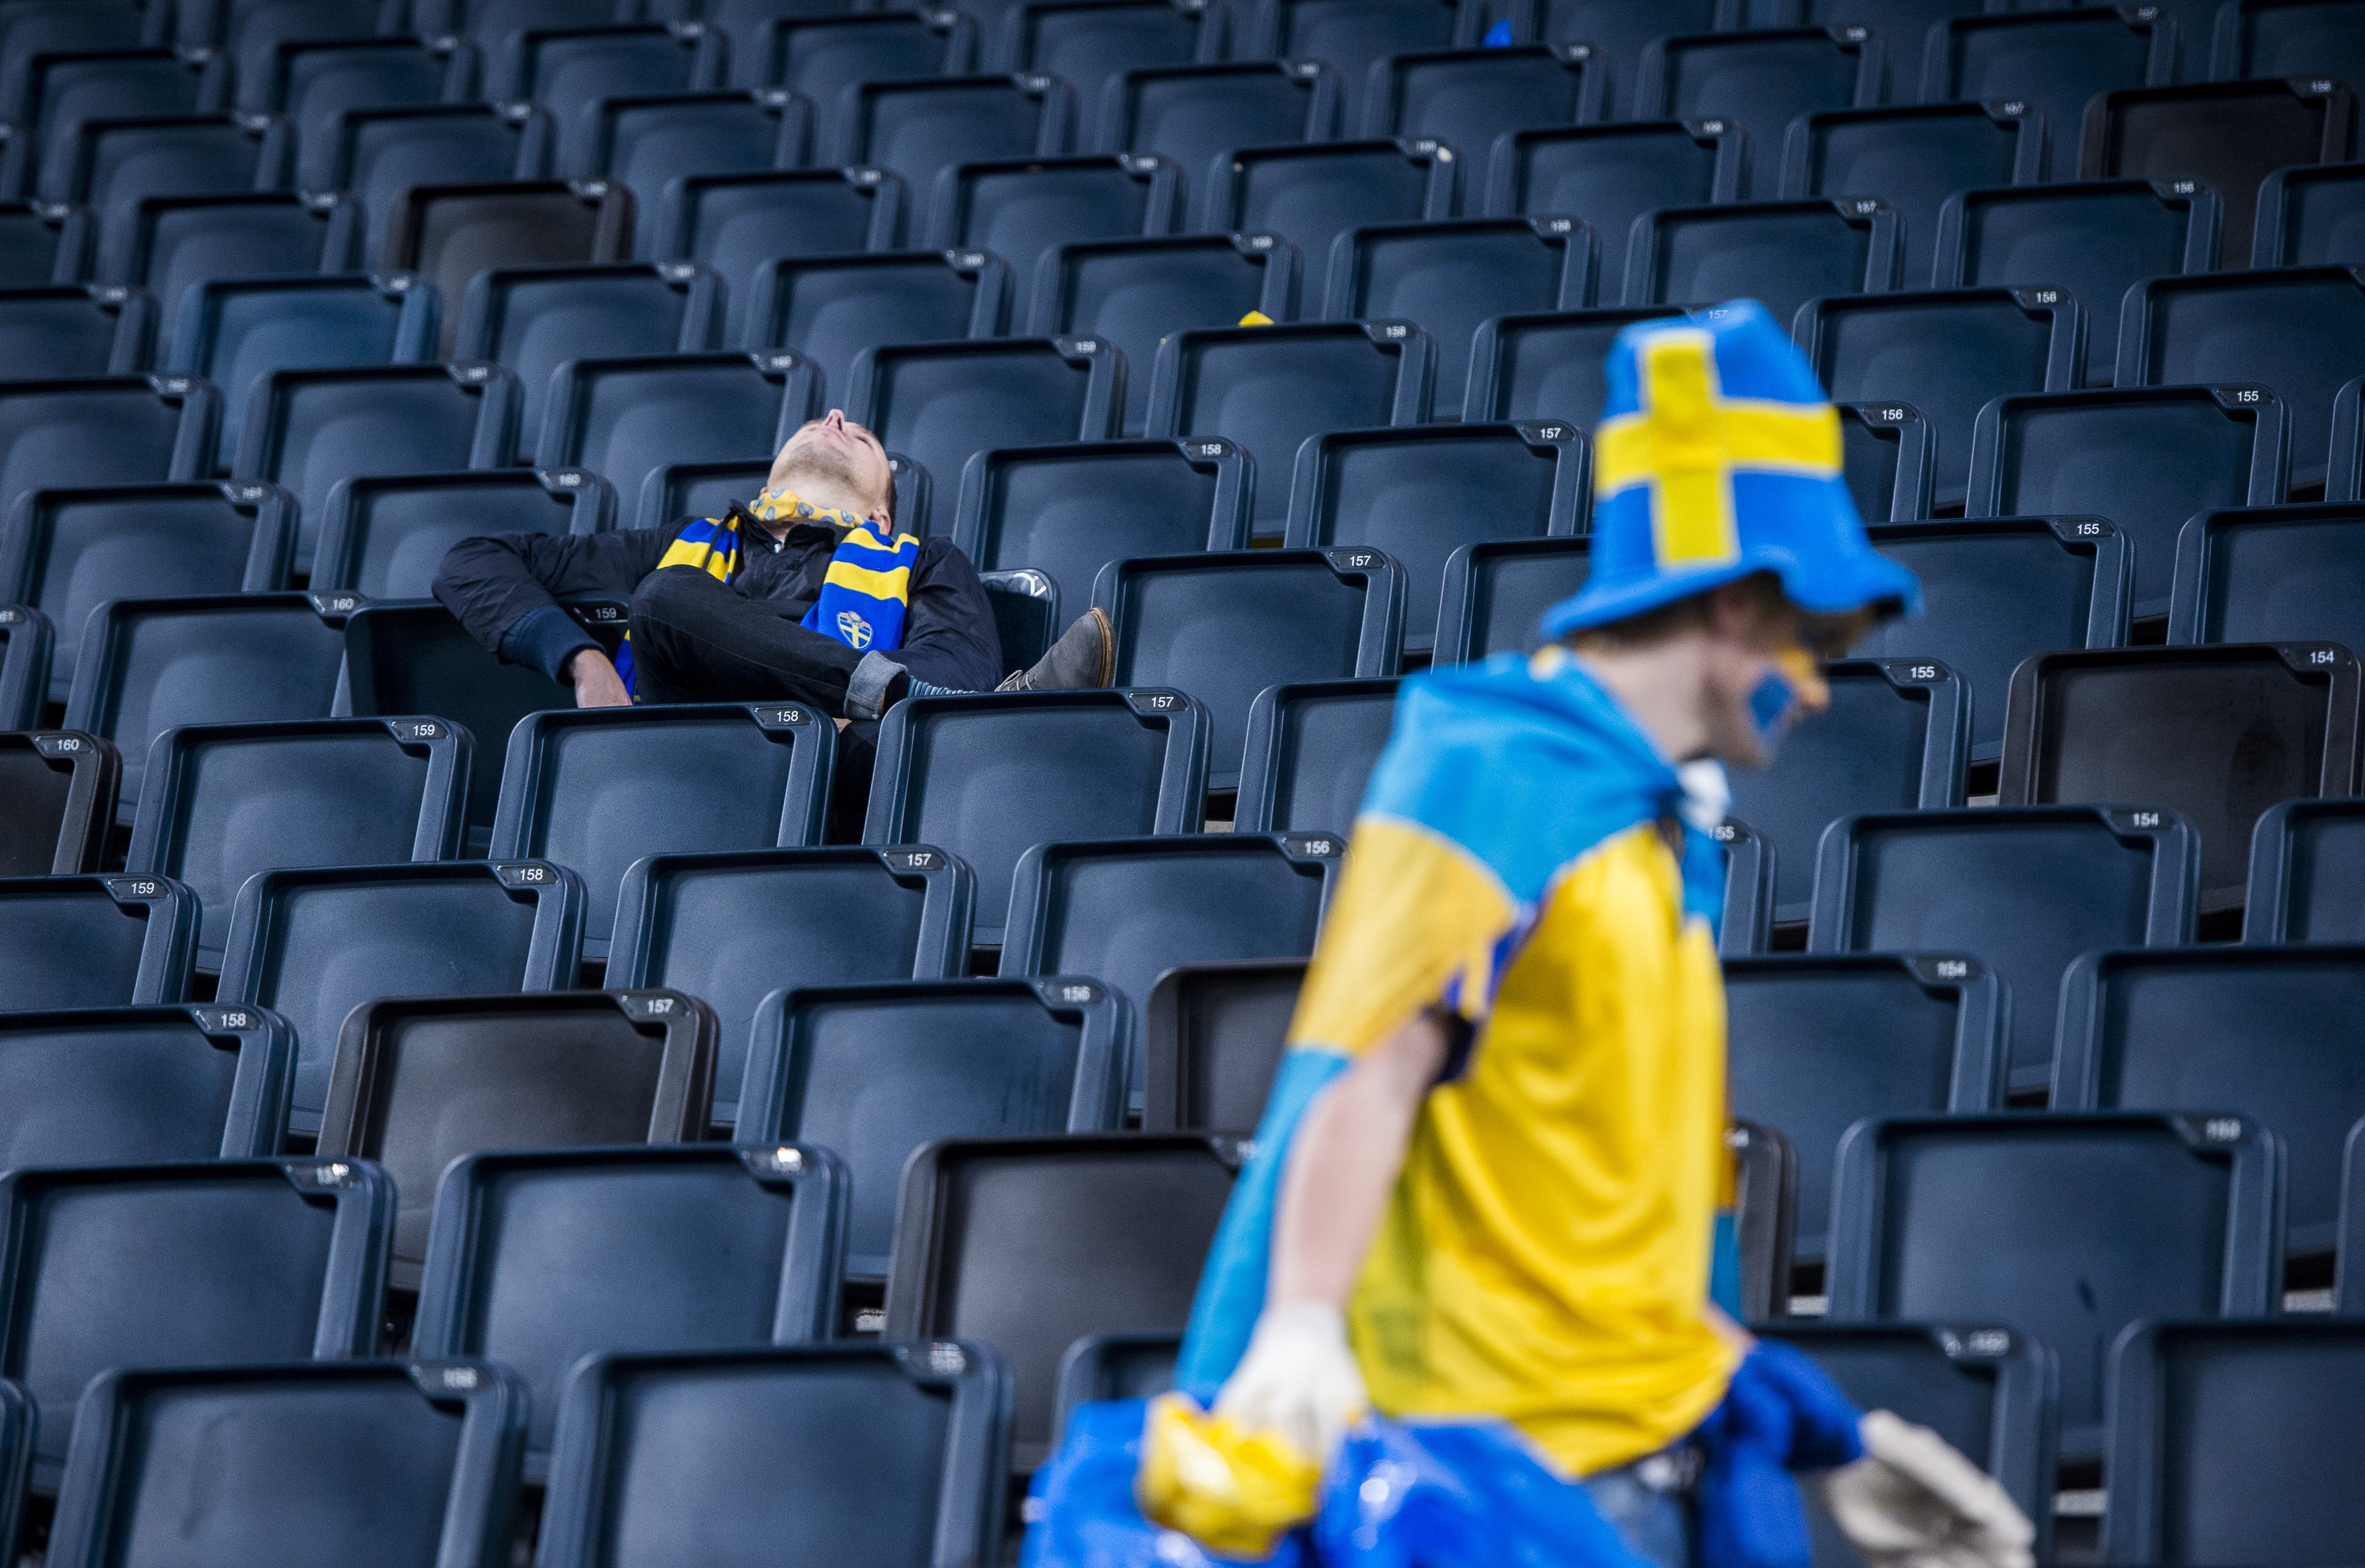 På fredag lottas VM – och Sverige saknas mest av alla länder i mästerskapet. 